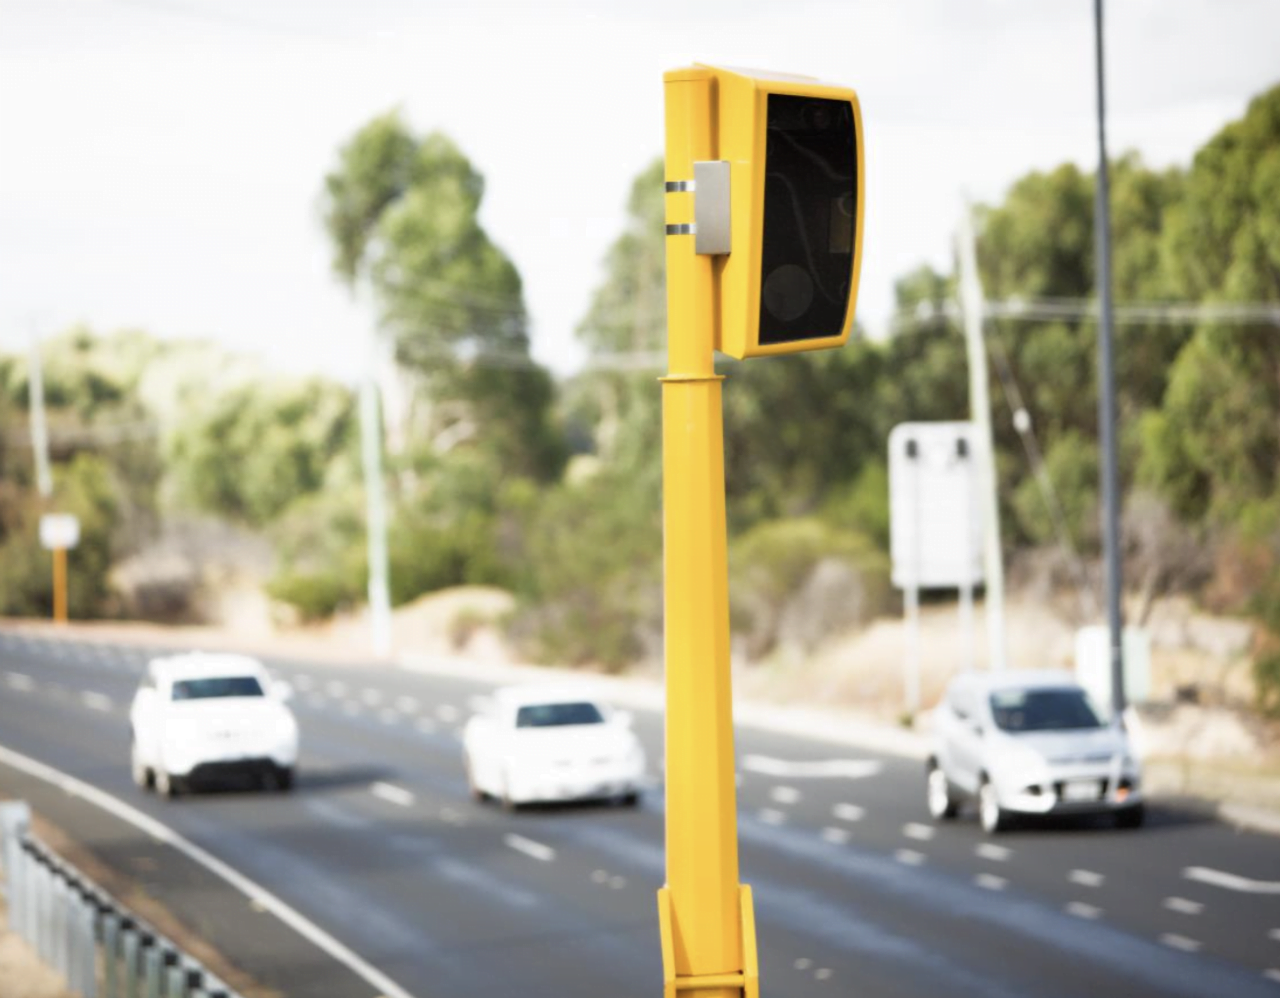 Nowe fotoradary. Żółty fotoradar na poboczu drogi z samochodami przejeżdżającymi w tle.